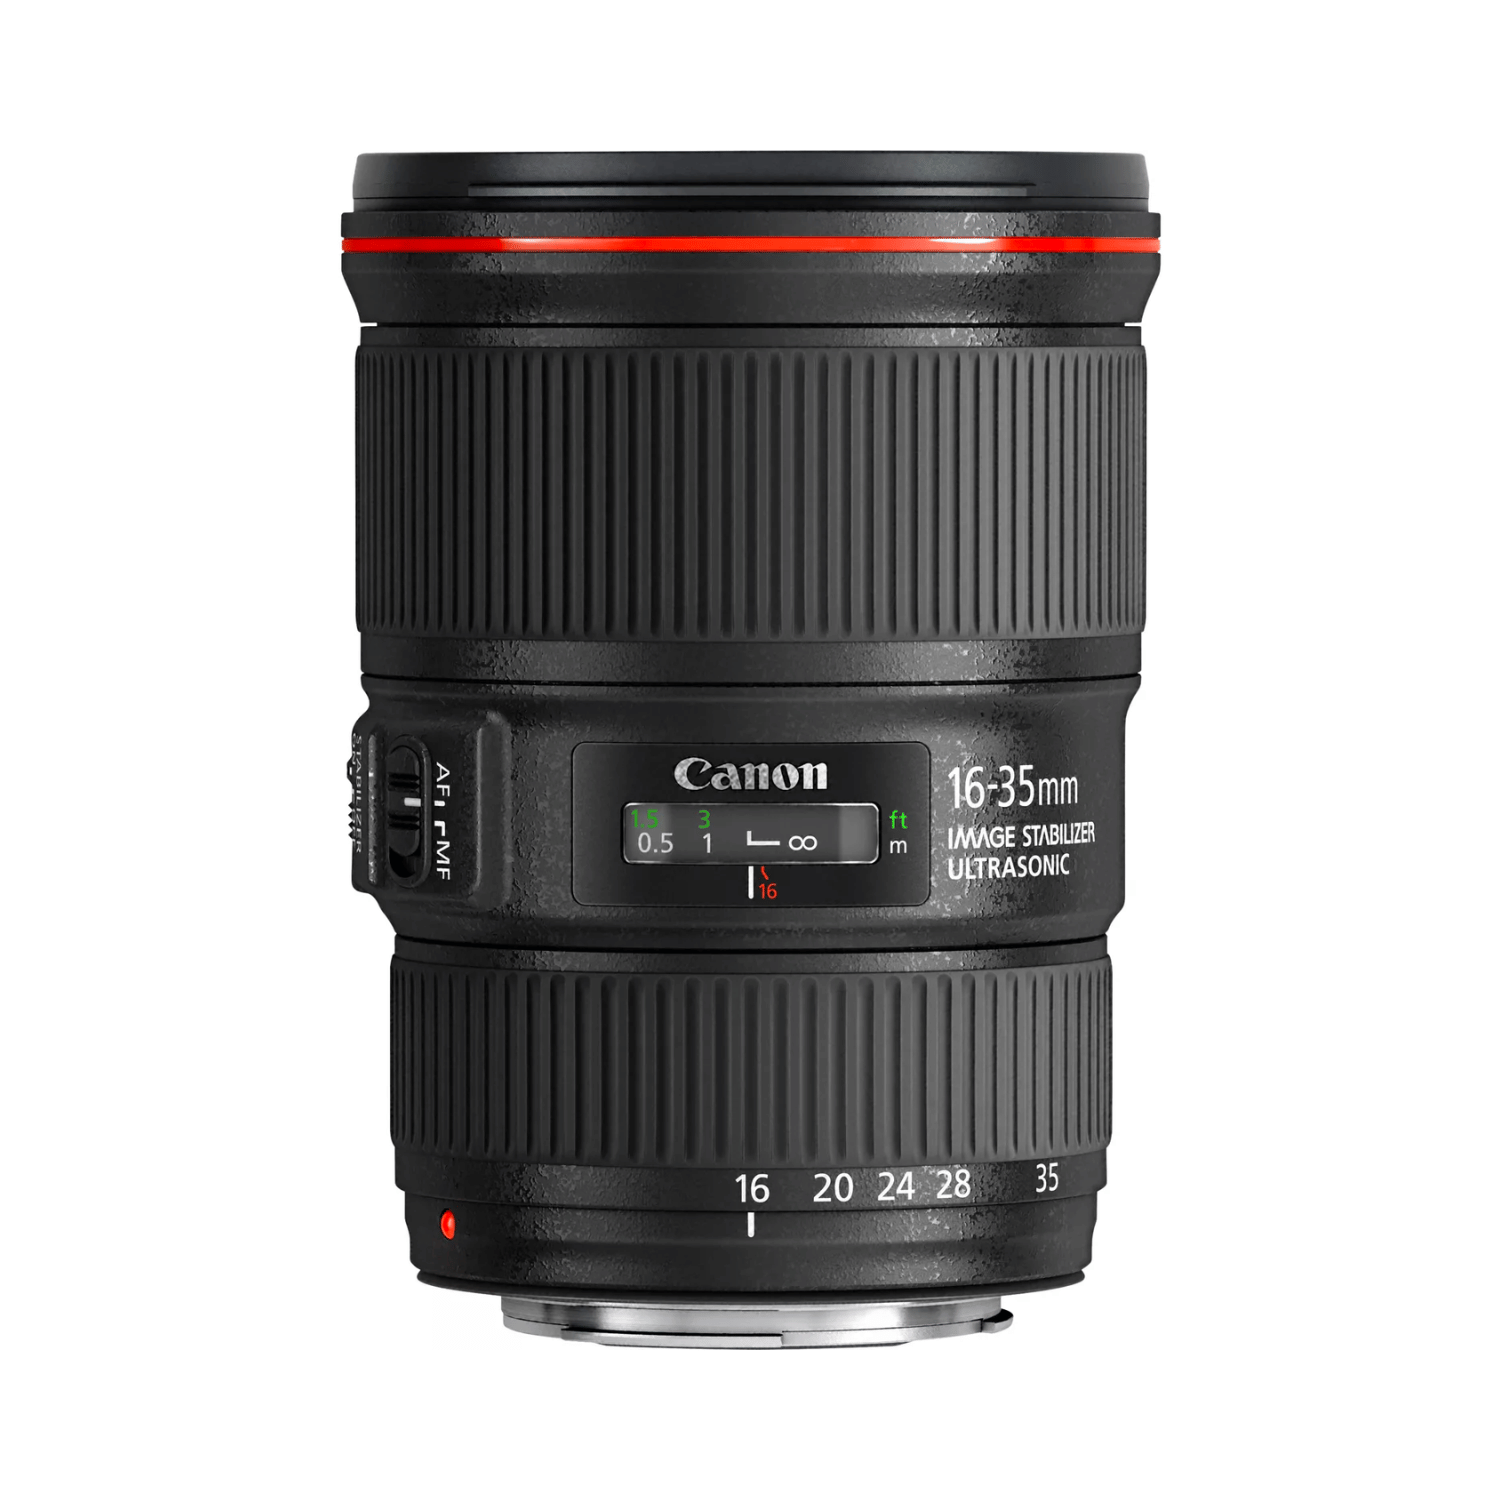 Canon EF 16-35mm f4L IS USM - Gar. Canon Italia -Cine Sud è da 48 anni sul mercato! 9518B005